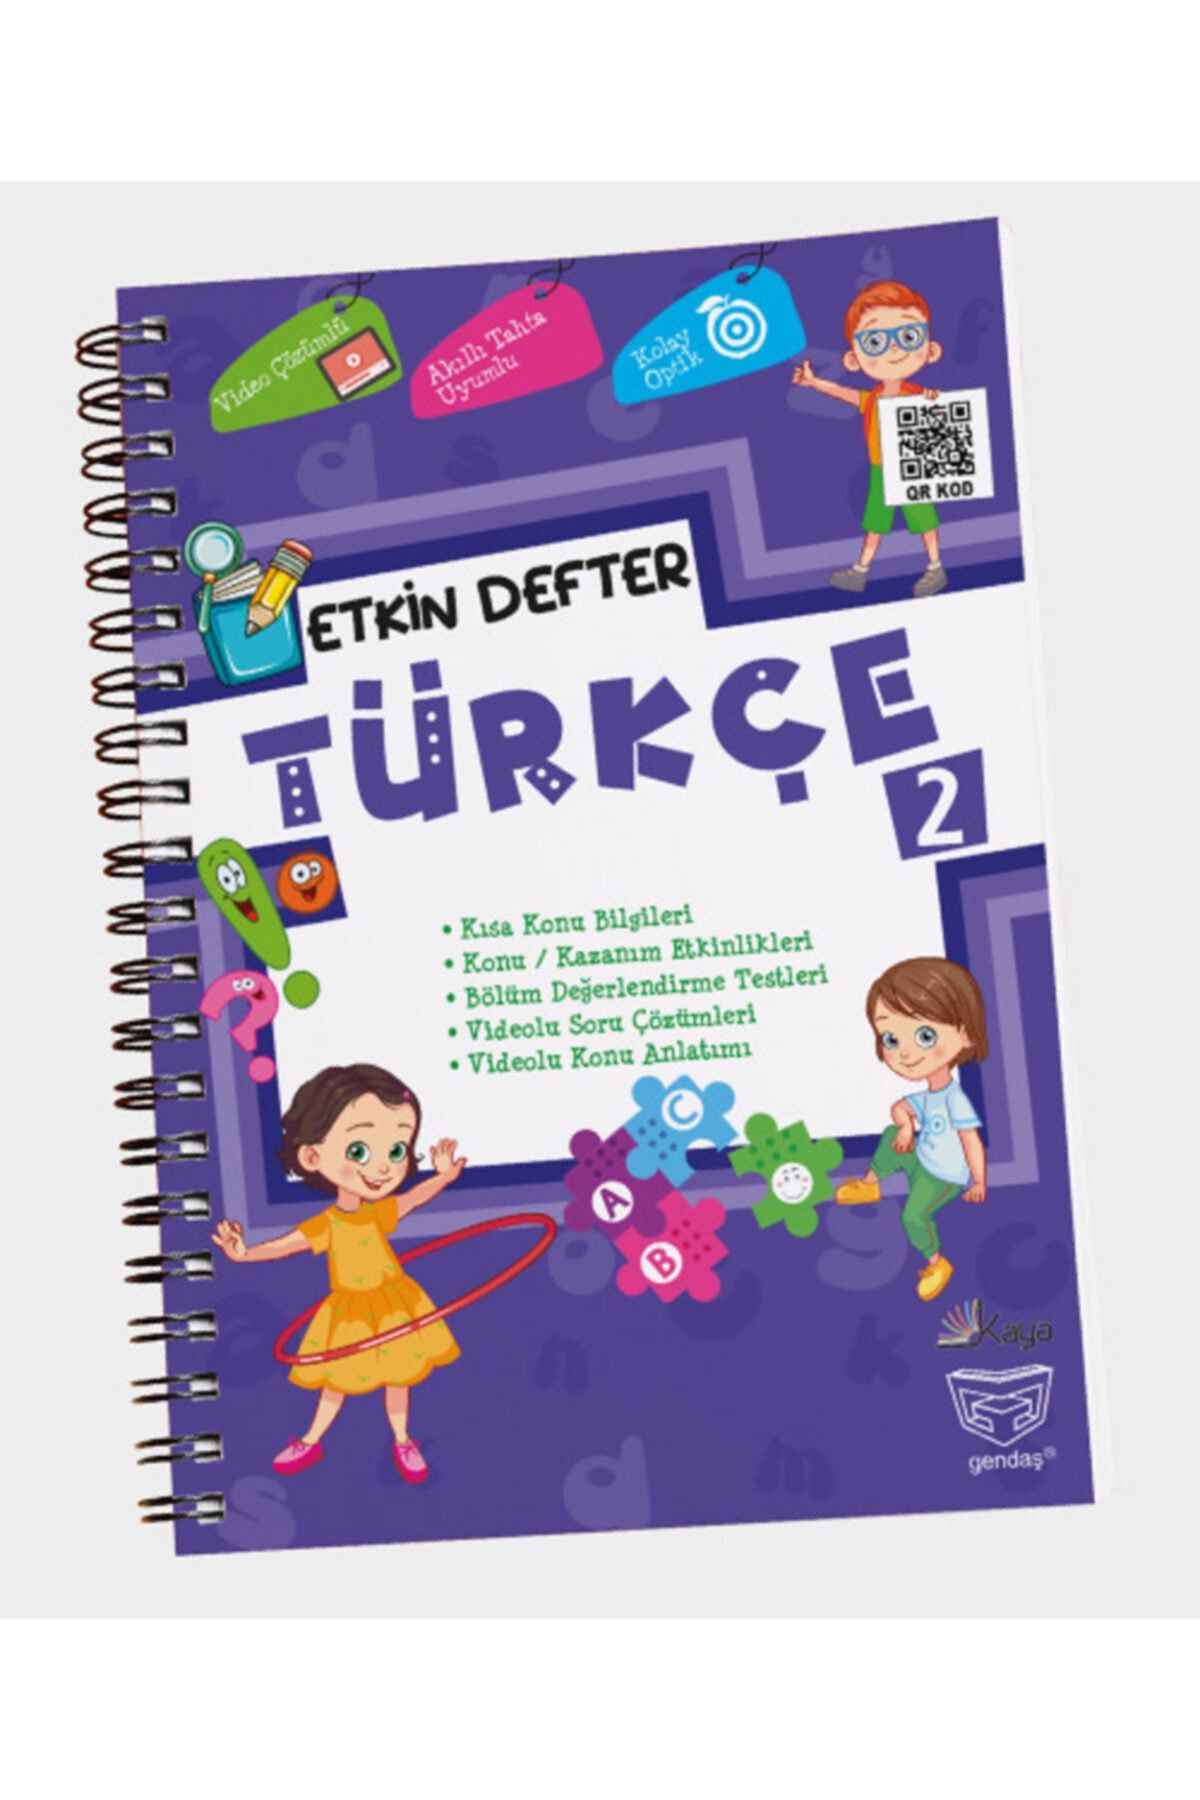 DIGERUI Etkin Defter Türkçe 2.sınıf Gendaş Yayınları